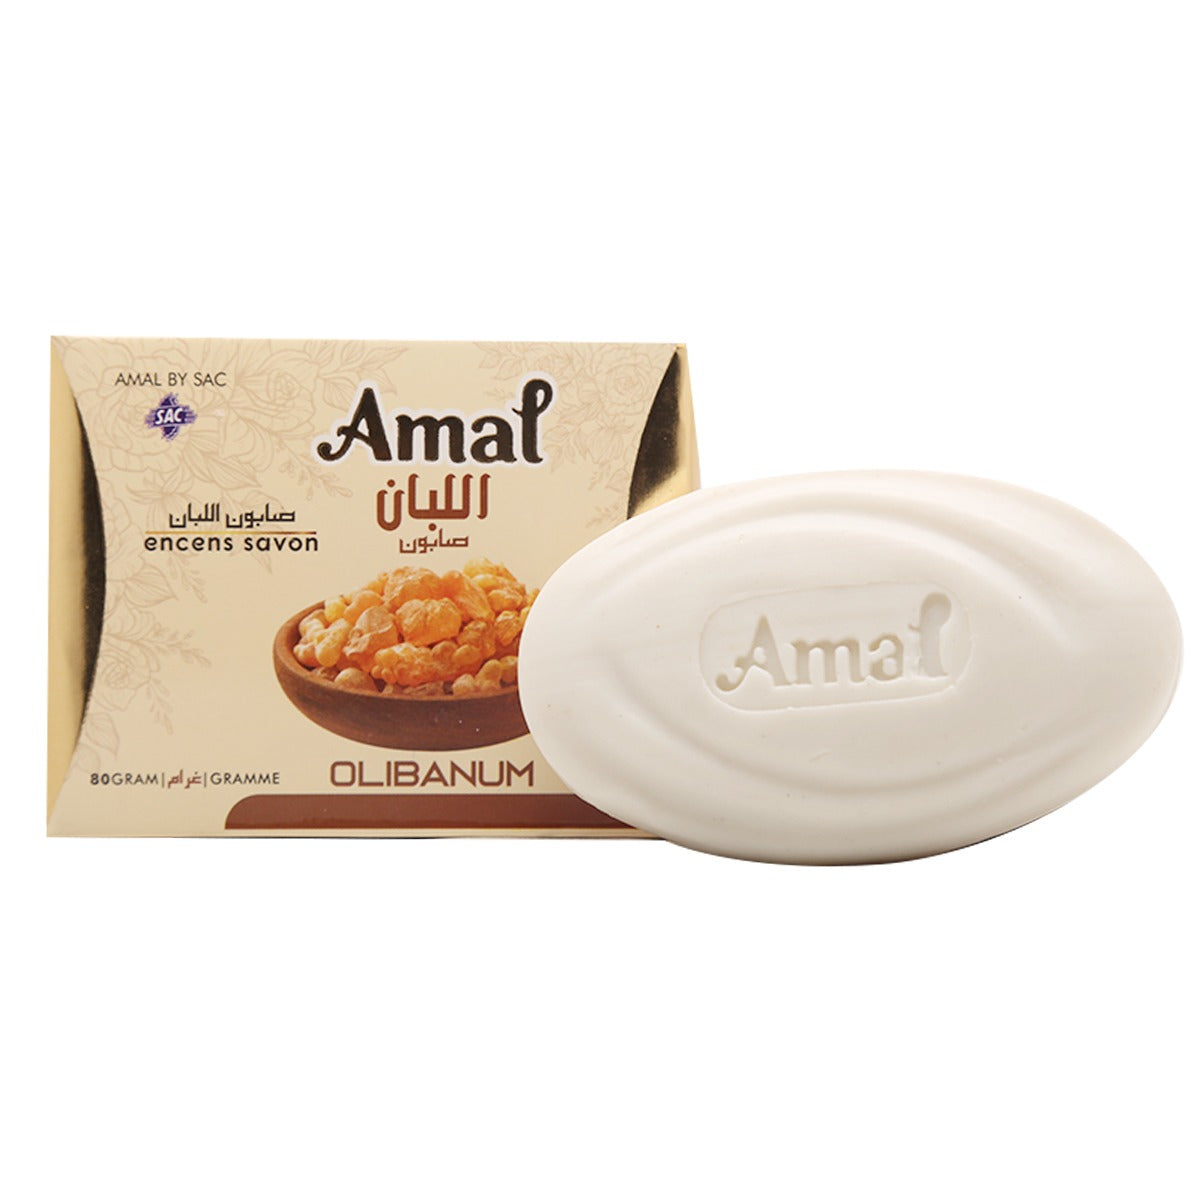 AMAL SOAP 80gm Olibanum Bar For Daily Use (Dozen Pack 12 pcs)